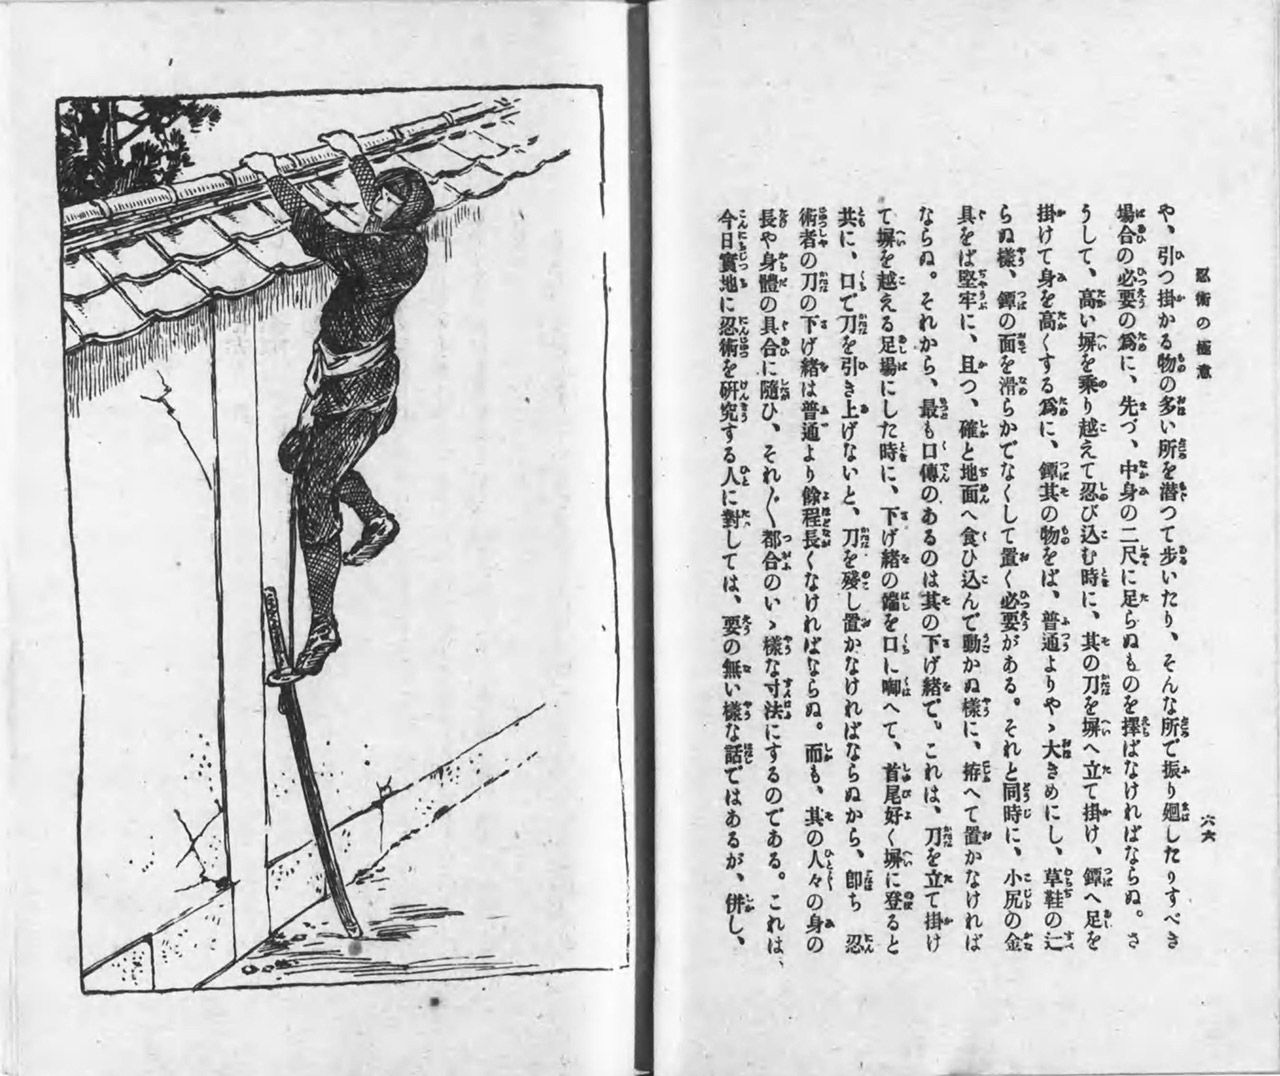 كتاب أسرار نينجوتسو ’’نينجوتسو نو غوكوي‘‘ لإيتو غينجيتسو عام 1917 (بإذن من مكتبة البرلمان القومية).